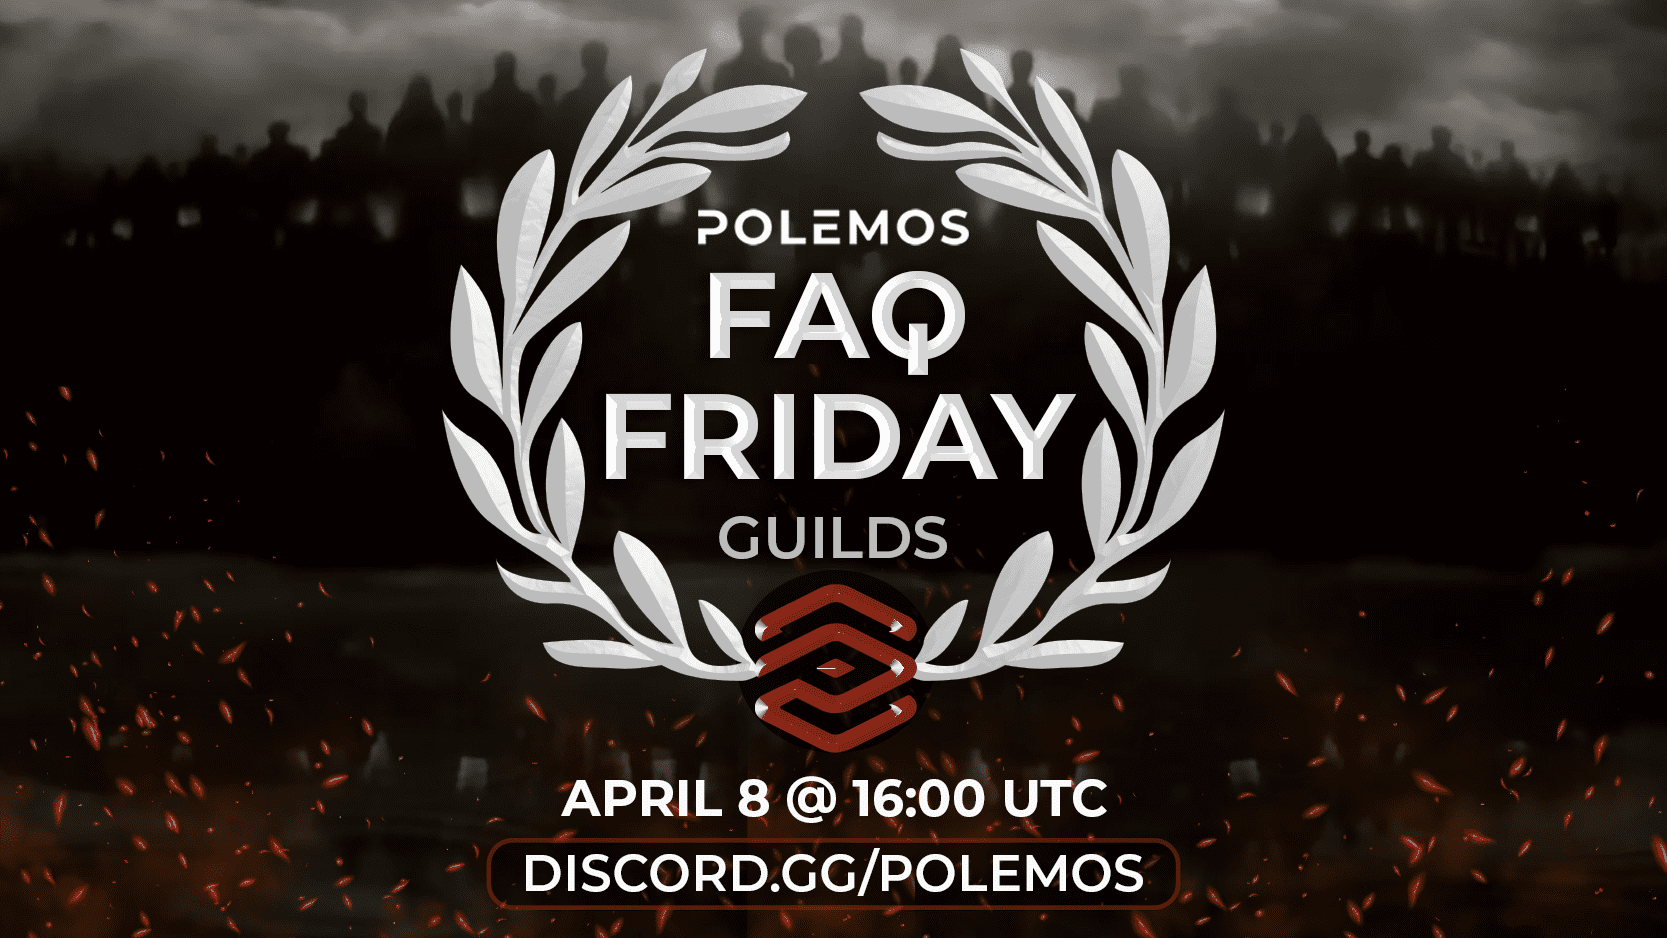 Polemos FAQ Friday 4